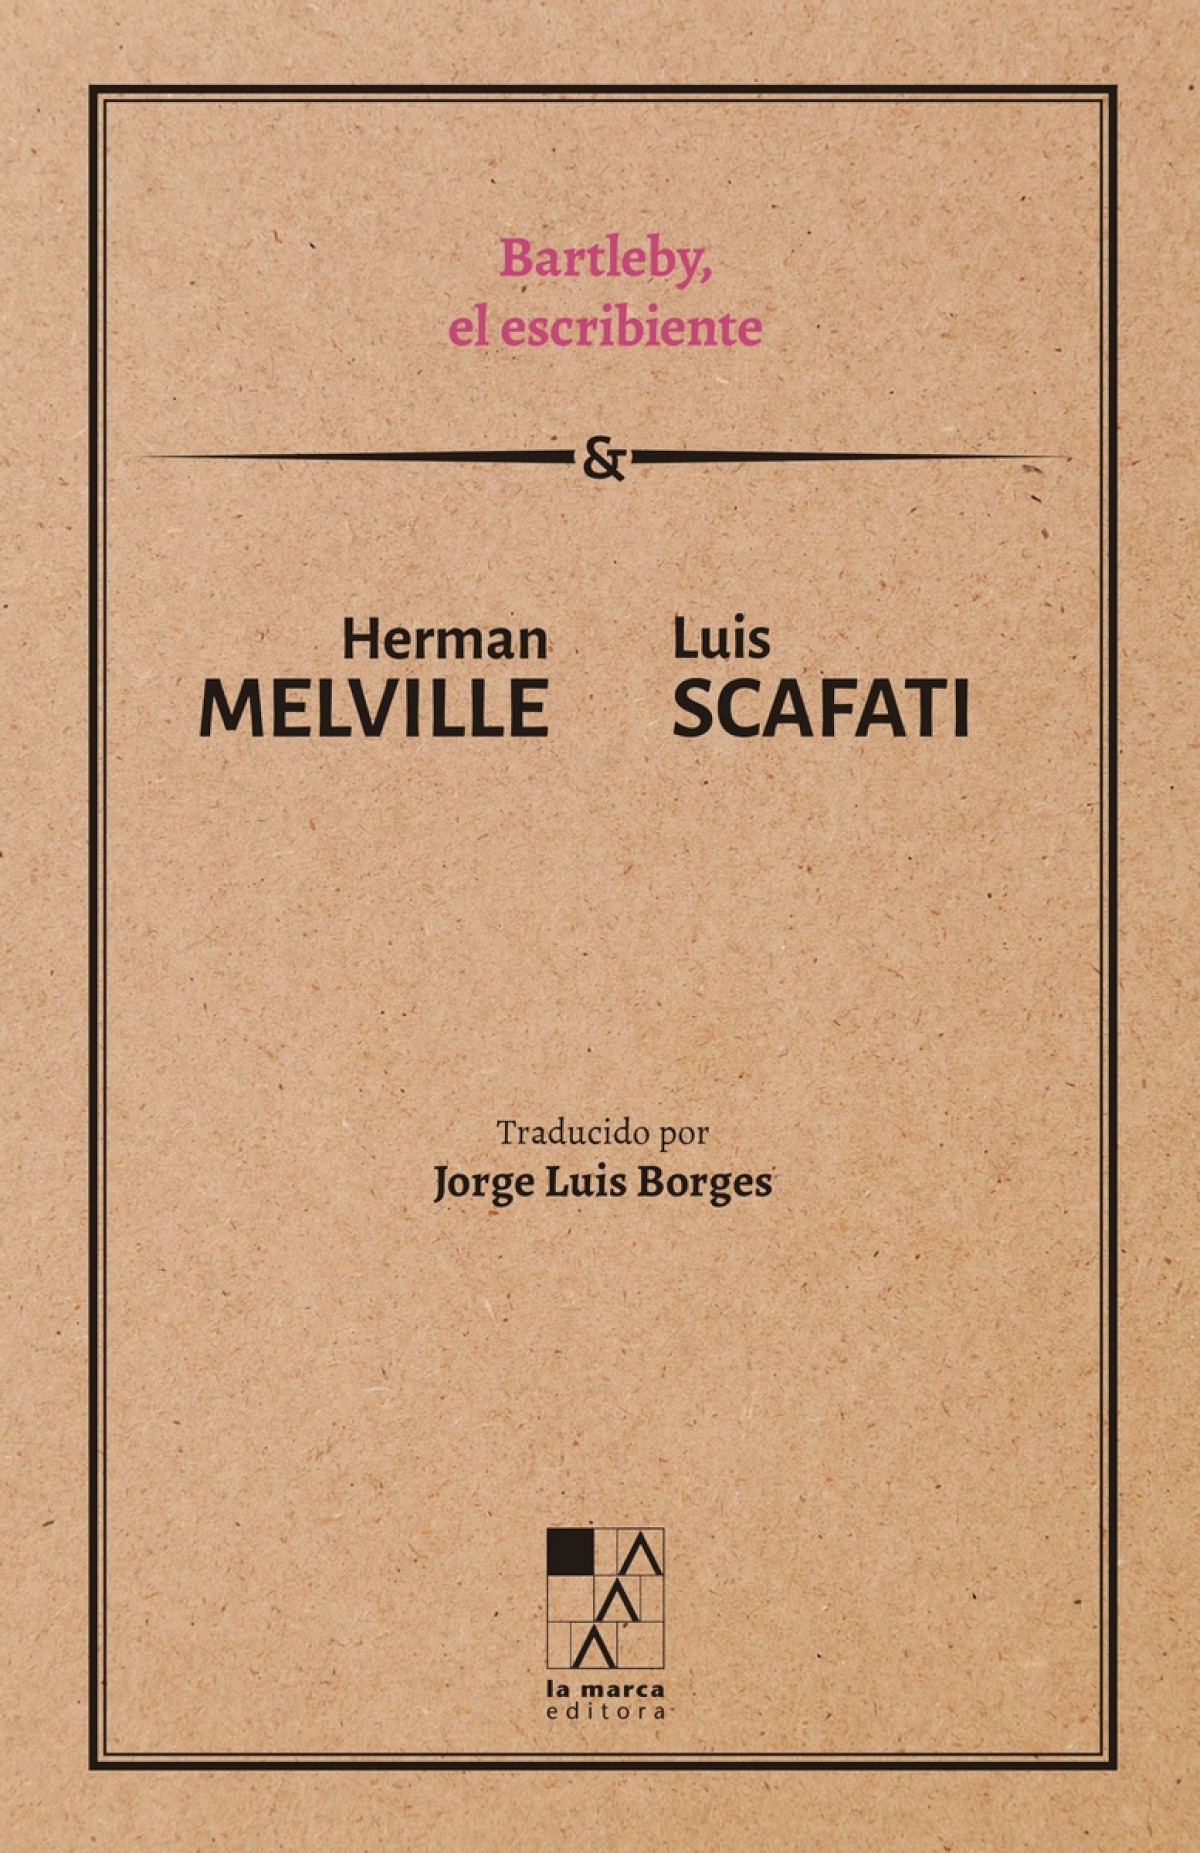 Bartleby, el escribiente - Melville, Herman / Scafati, Luis